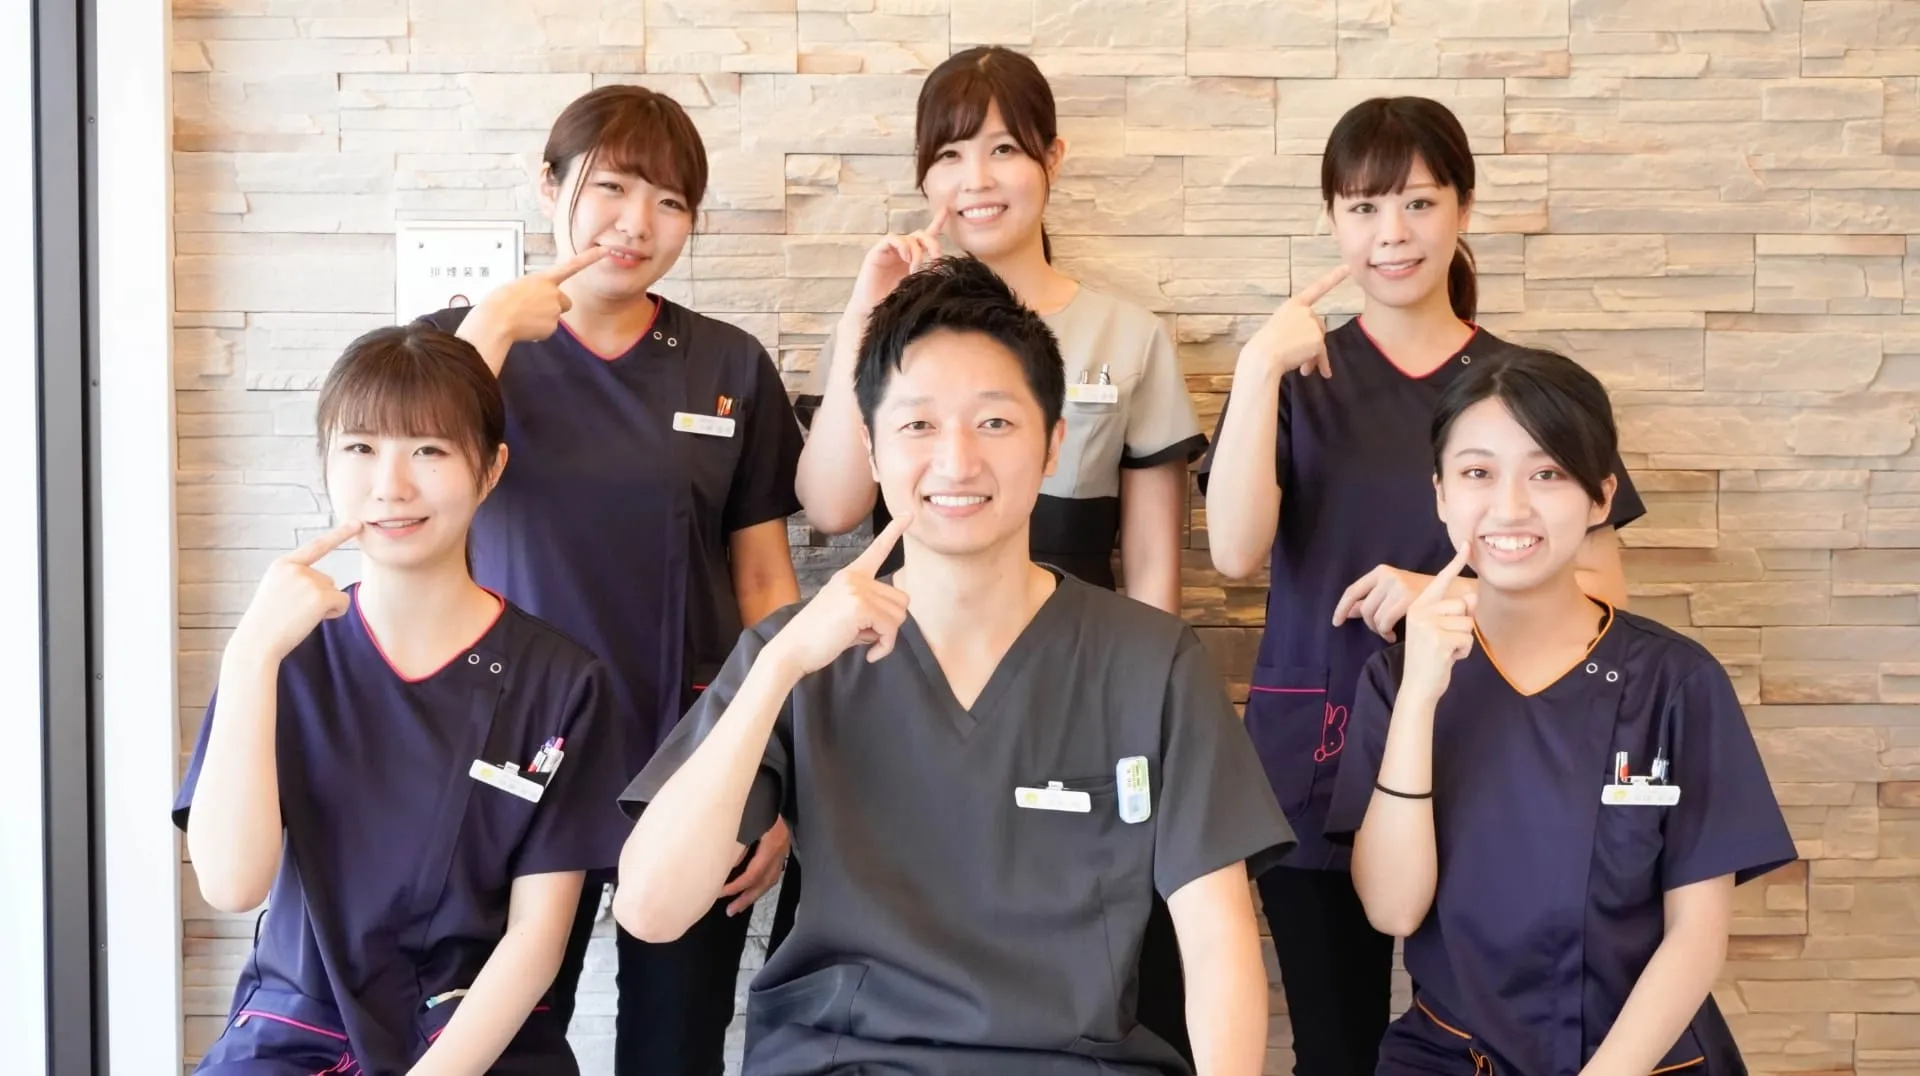 中央に男性歯科医師、取り囲むように歯科助手の女性が笑顔で座っている写真